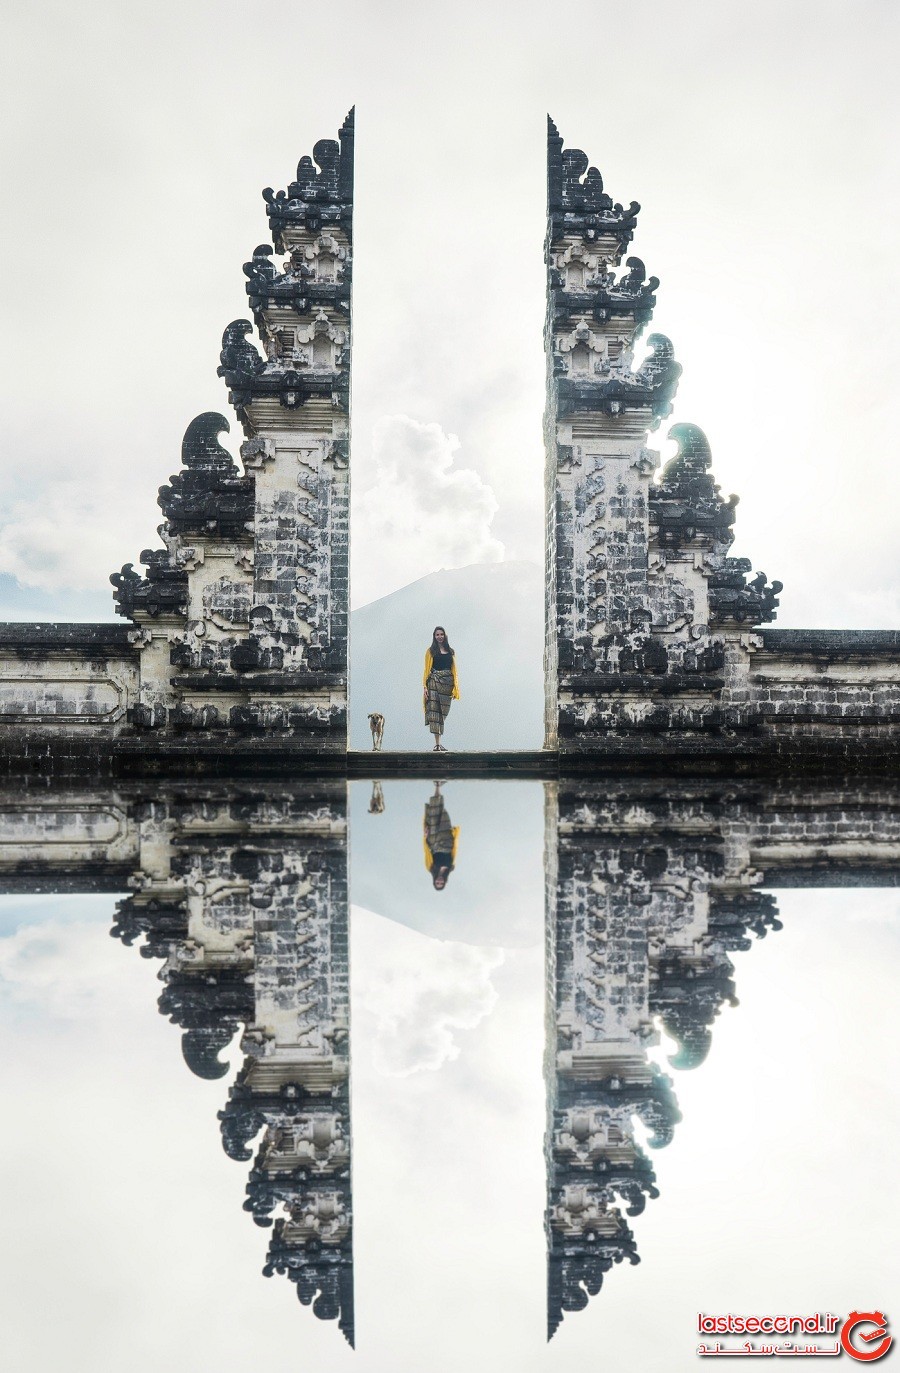 دریاچه معبد بالی که توسط کاربران اینستاگرام معروف شده است چیزی جز یک حقه دوربین نیست